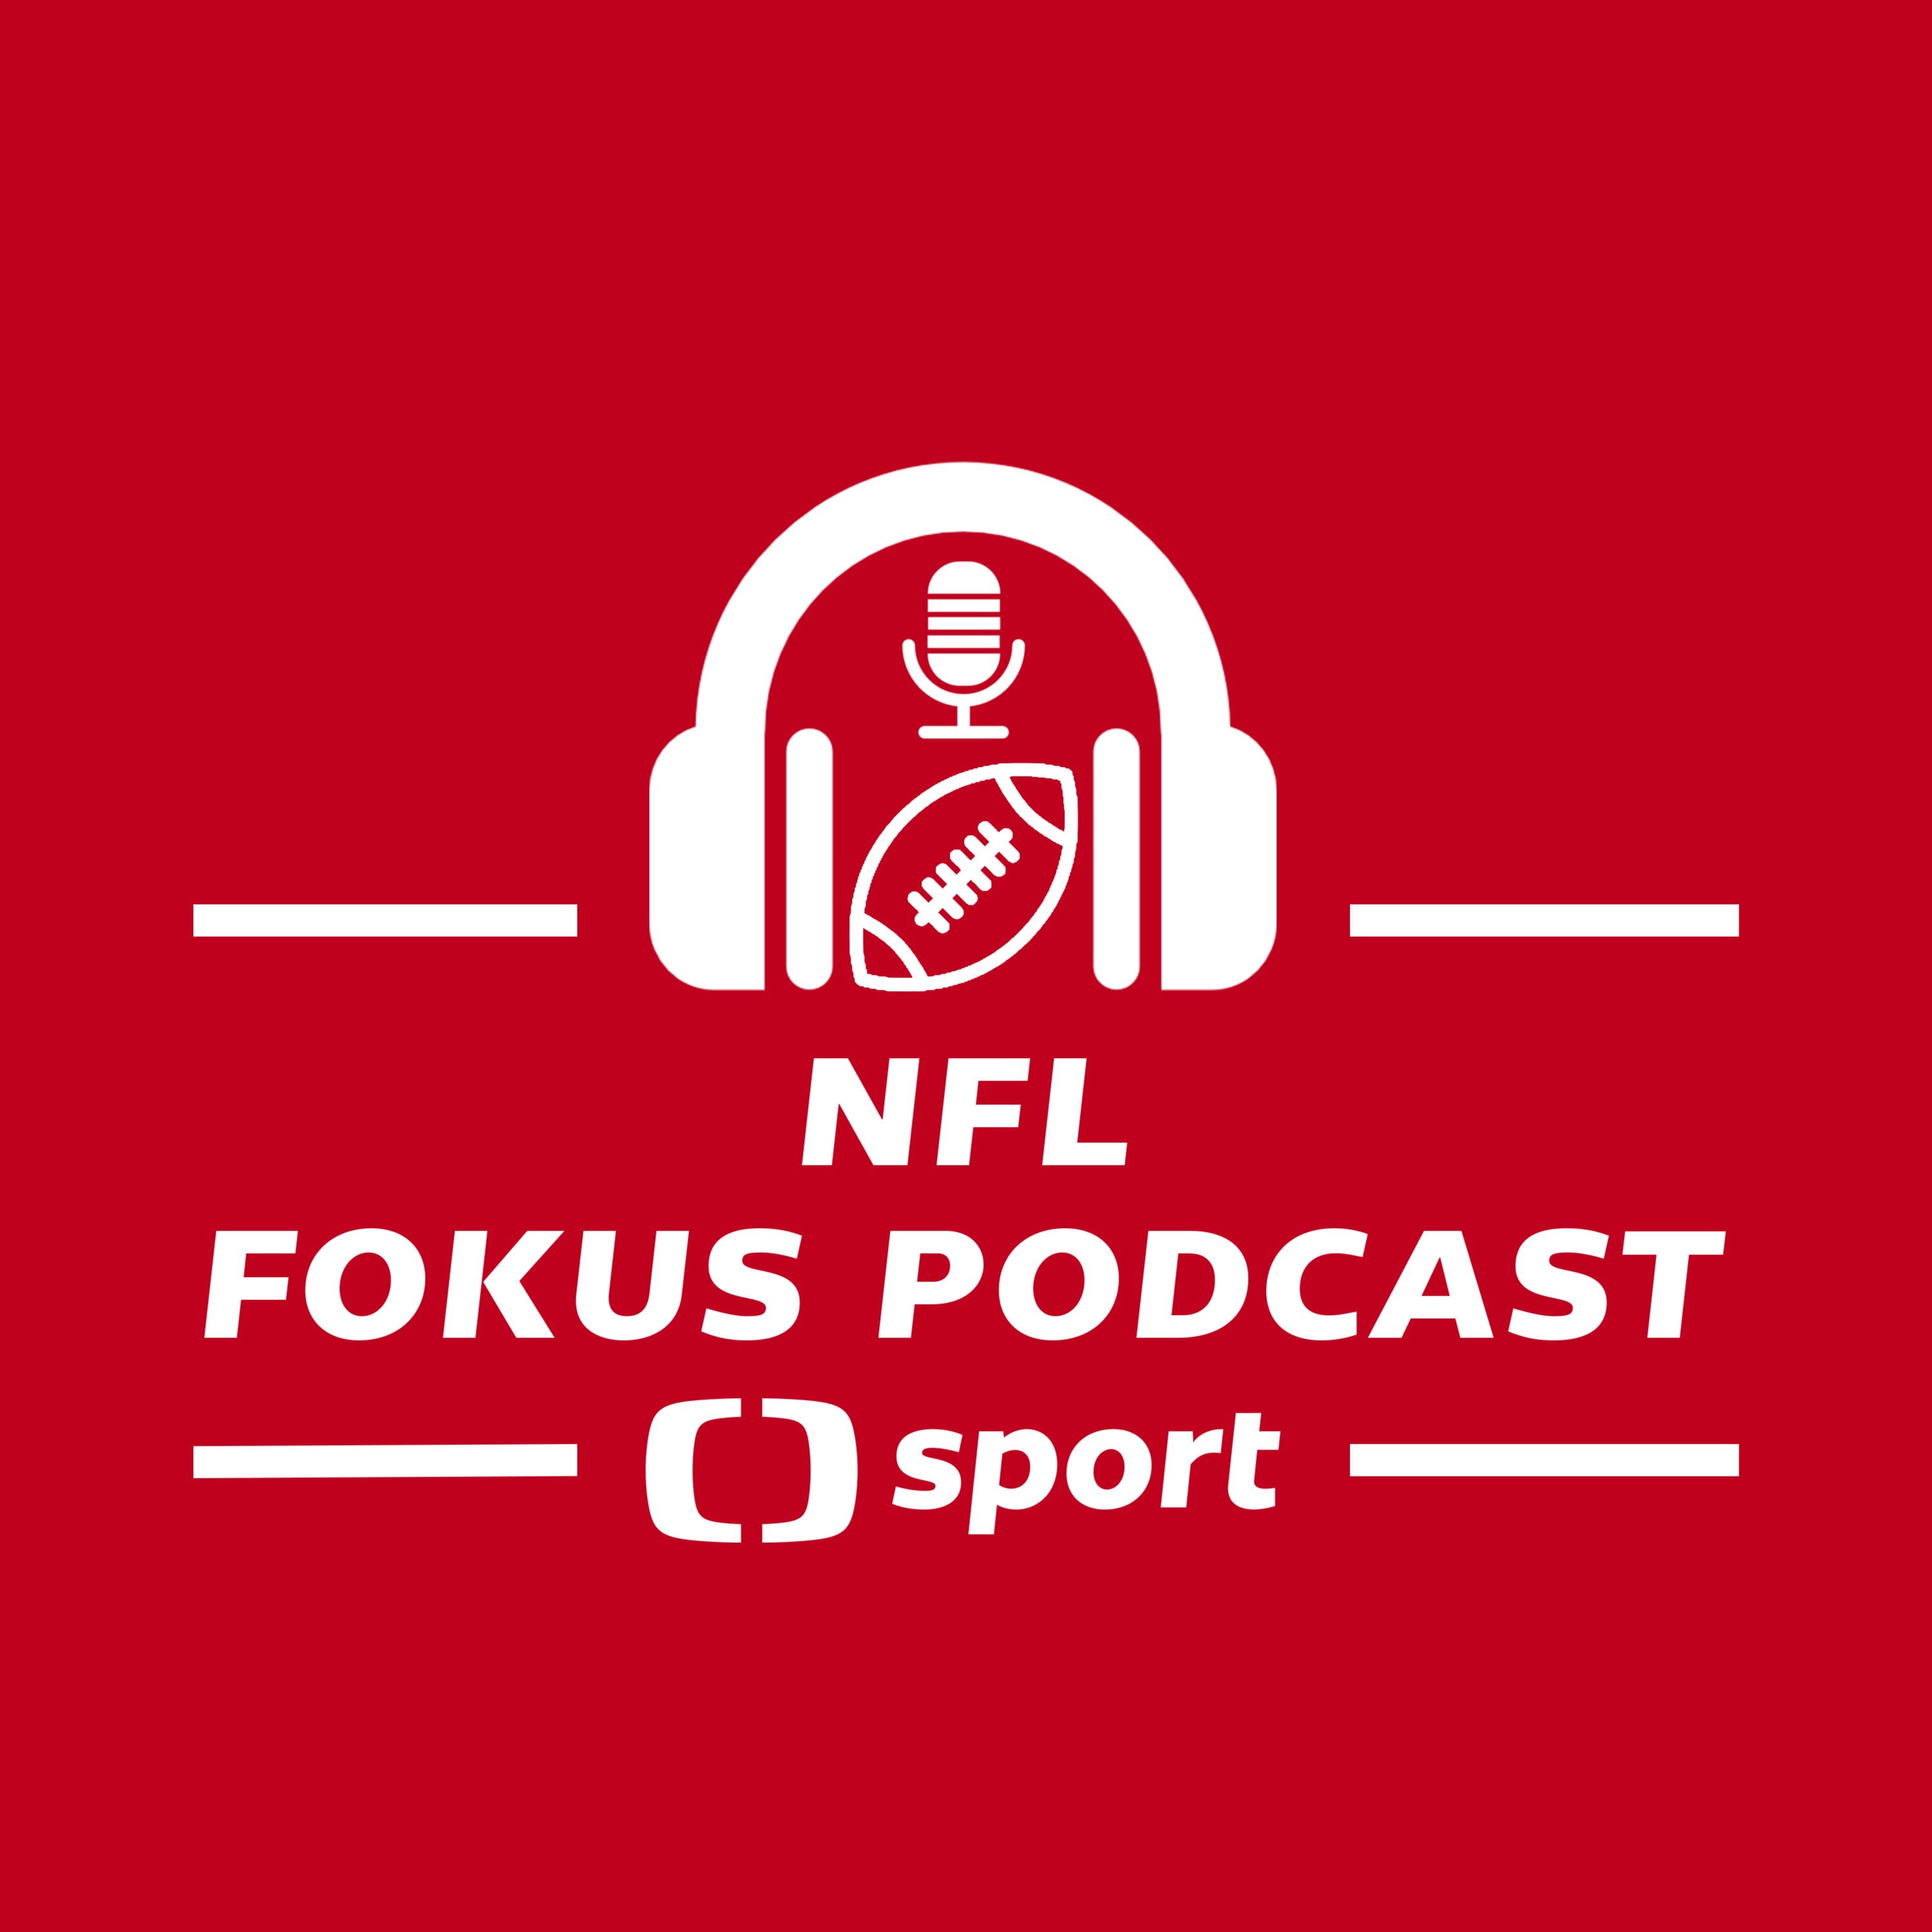 NFL fokus podcast: Můžou Saints vyhrávat i bez Breese a uzavře se NFL do bubliny?